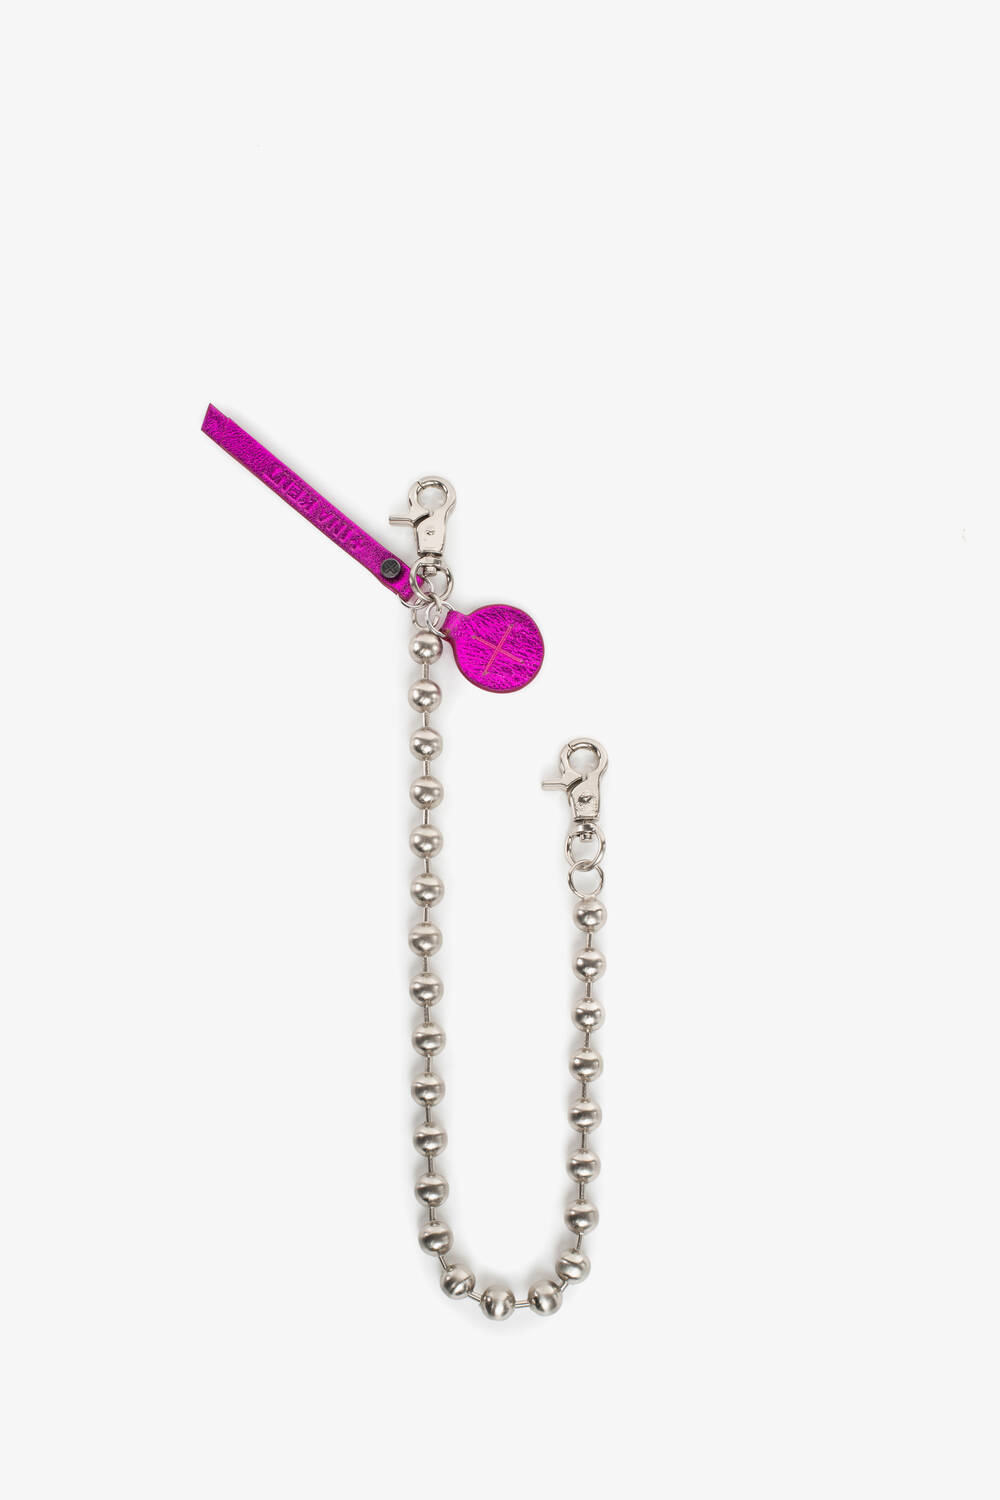 Schlüsselkette und Kettenriemen BALL'N'CHAIN special edition crackled neon pink 